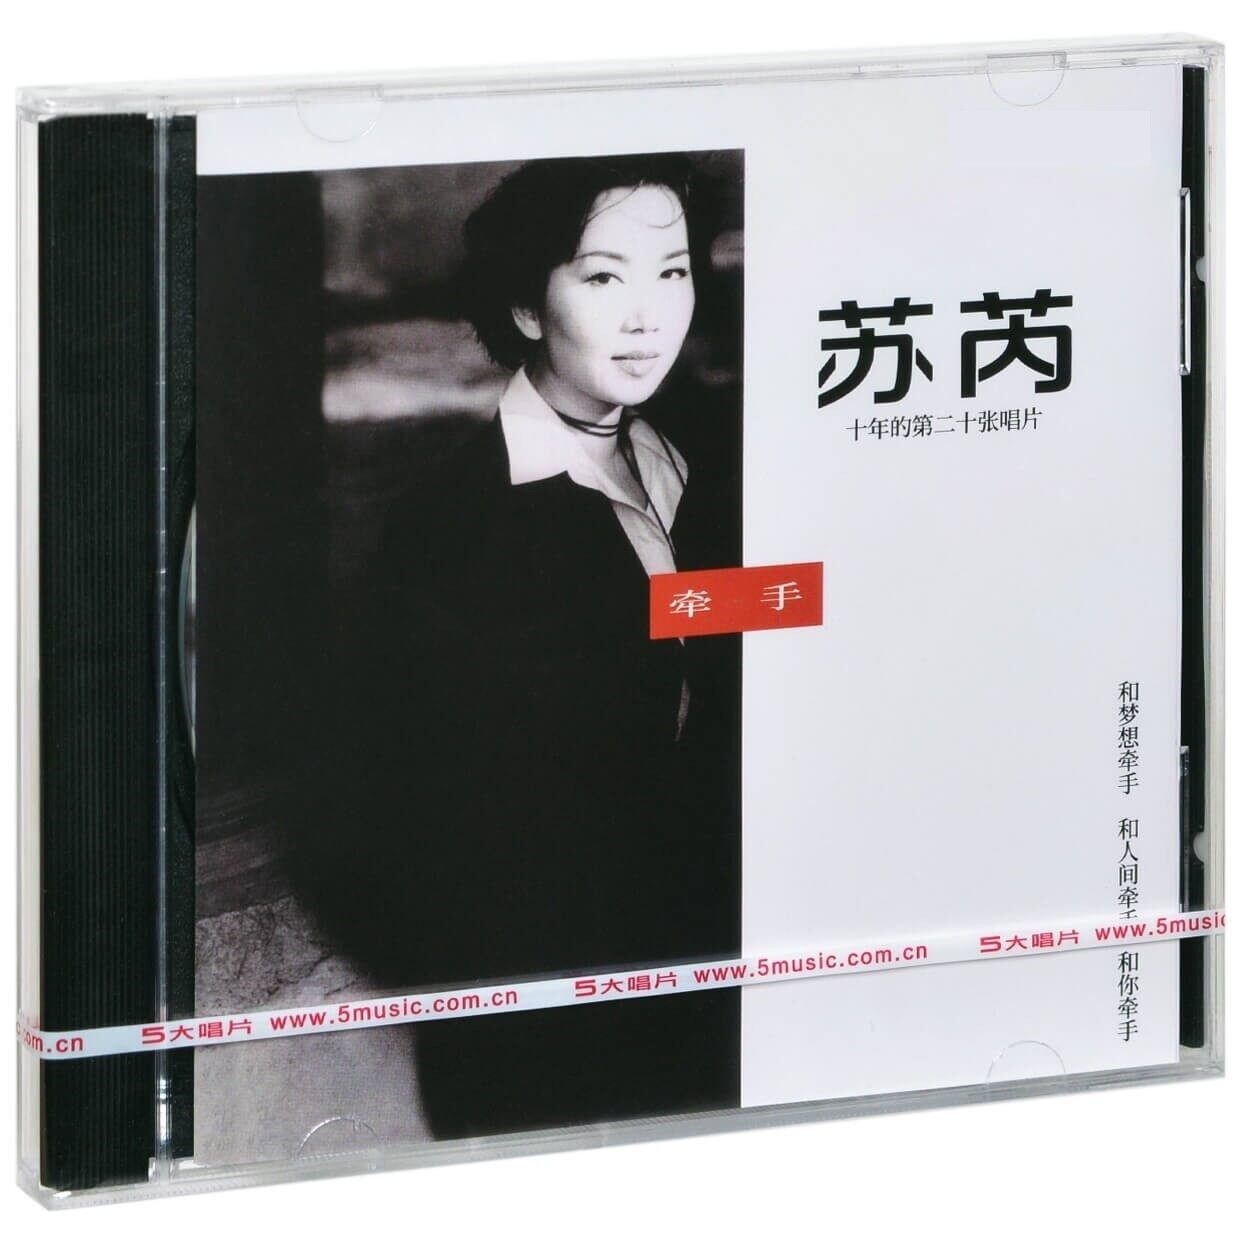 官方正版 苏芮专辑 牵手 华语流行 CD唱片